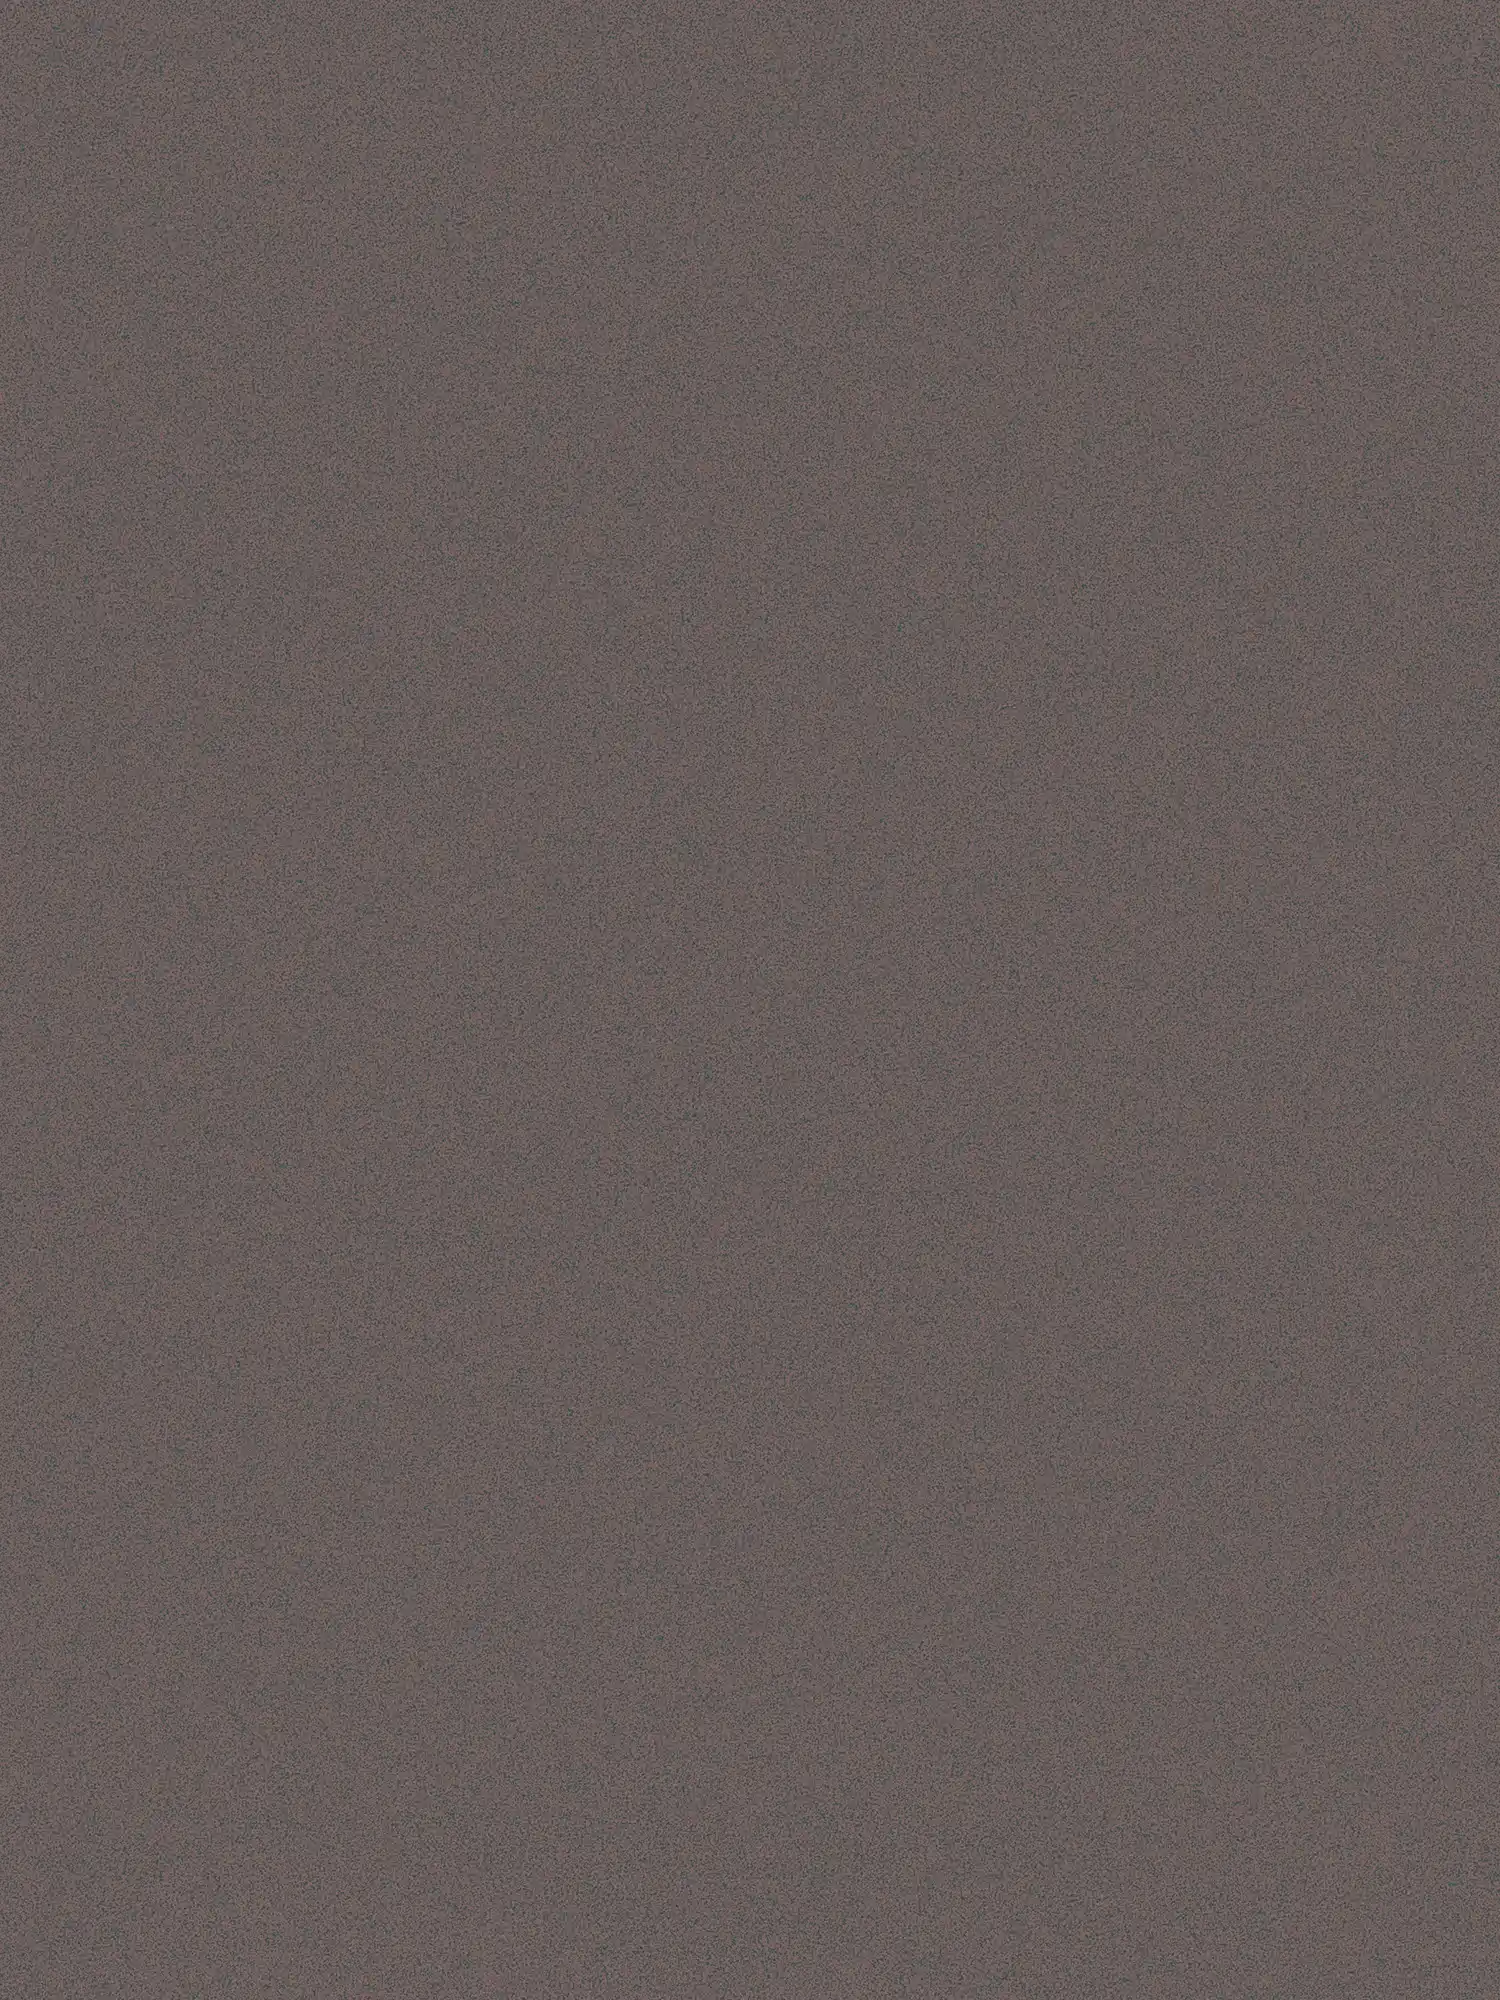 Dunkle Tapete Braun mit Strukturmuster & seidenmatt Glanz
